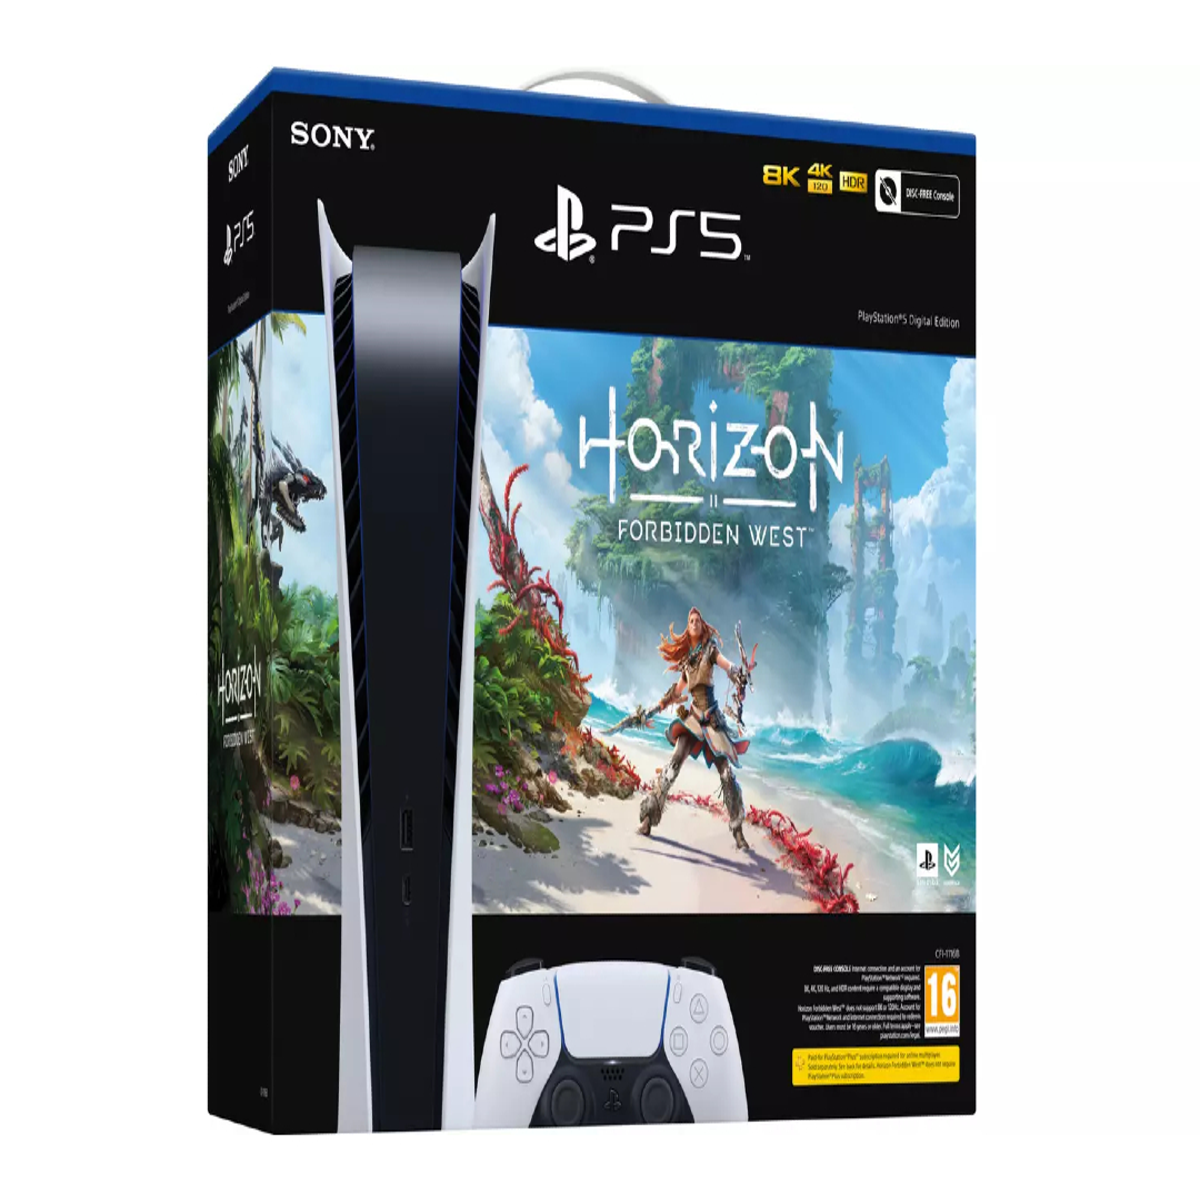 Horizon Forbidden West • Steam Deck Gameplay • Remote Play 